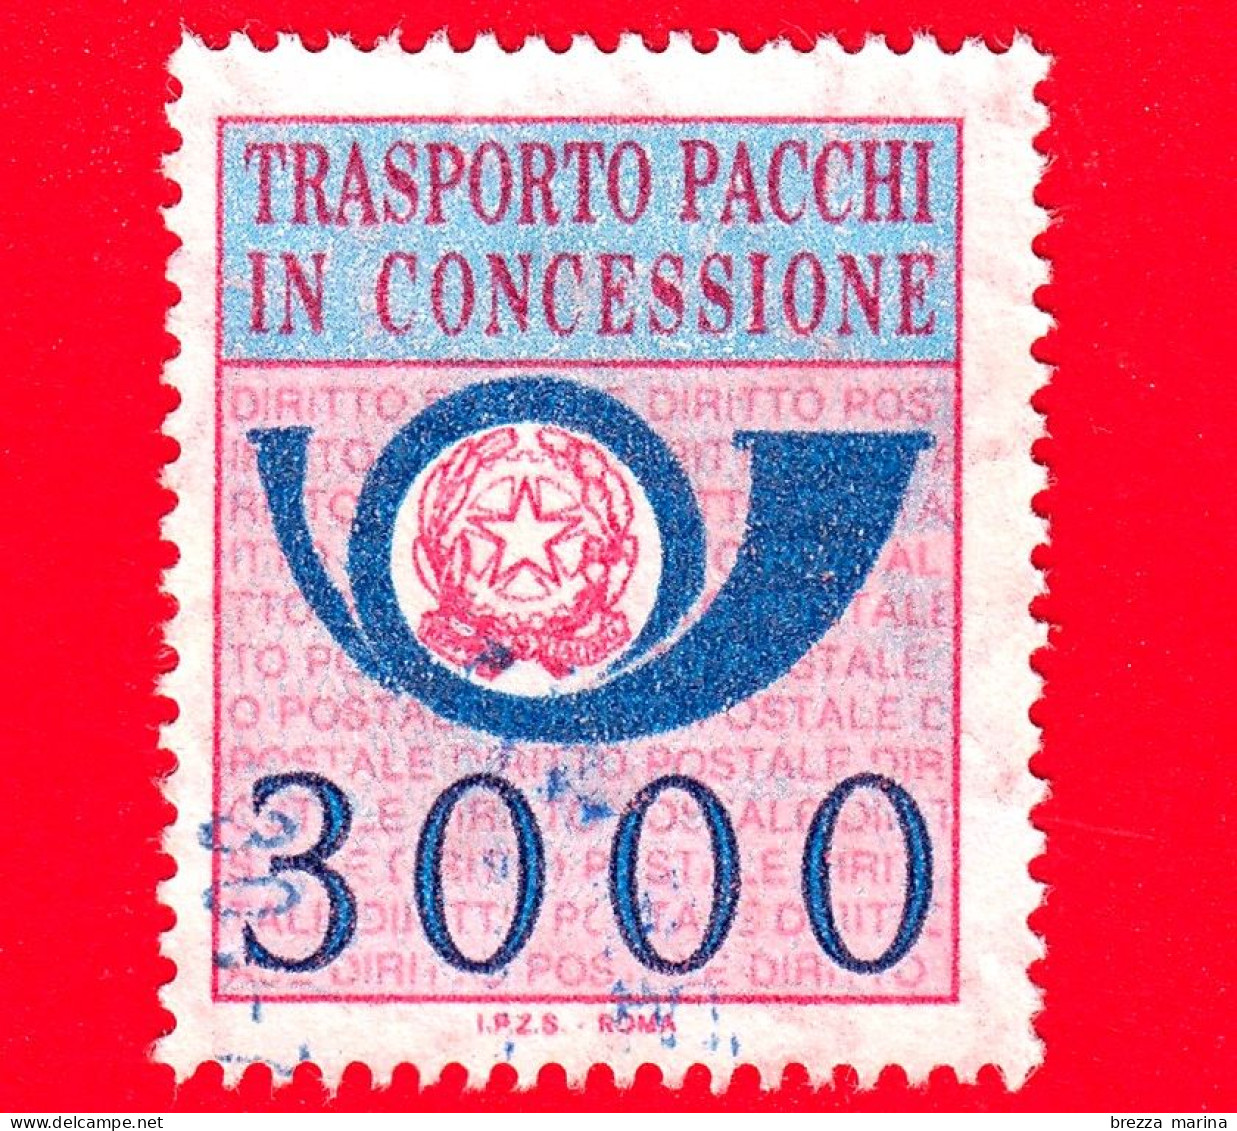 ITALIA - Usato - 1984 - Sezione Unica - Pacchi In Concessione - Corno Di Posta E Stemma Della Repubblica - 3000 - Paquetes En Consigna